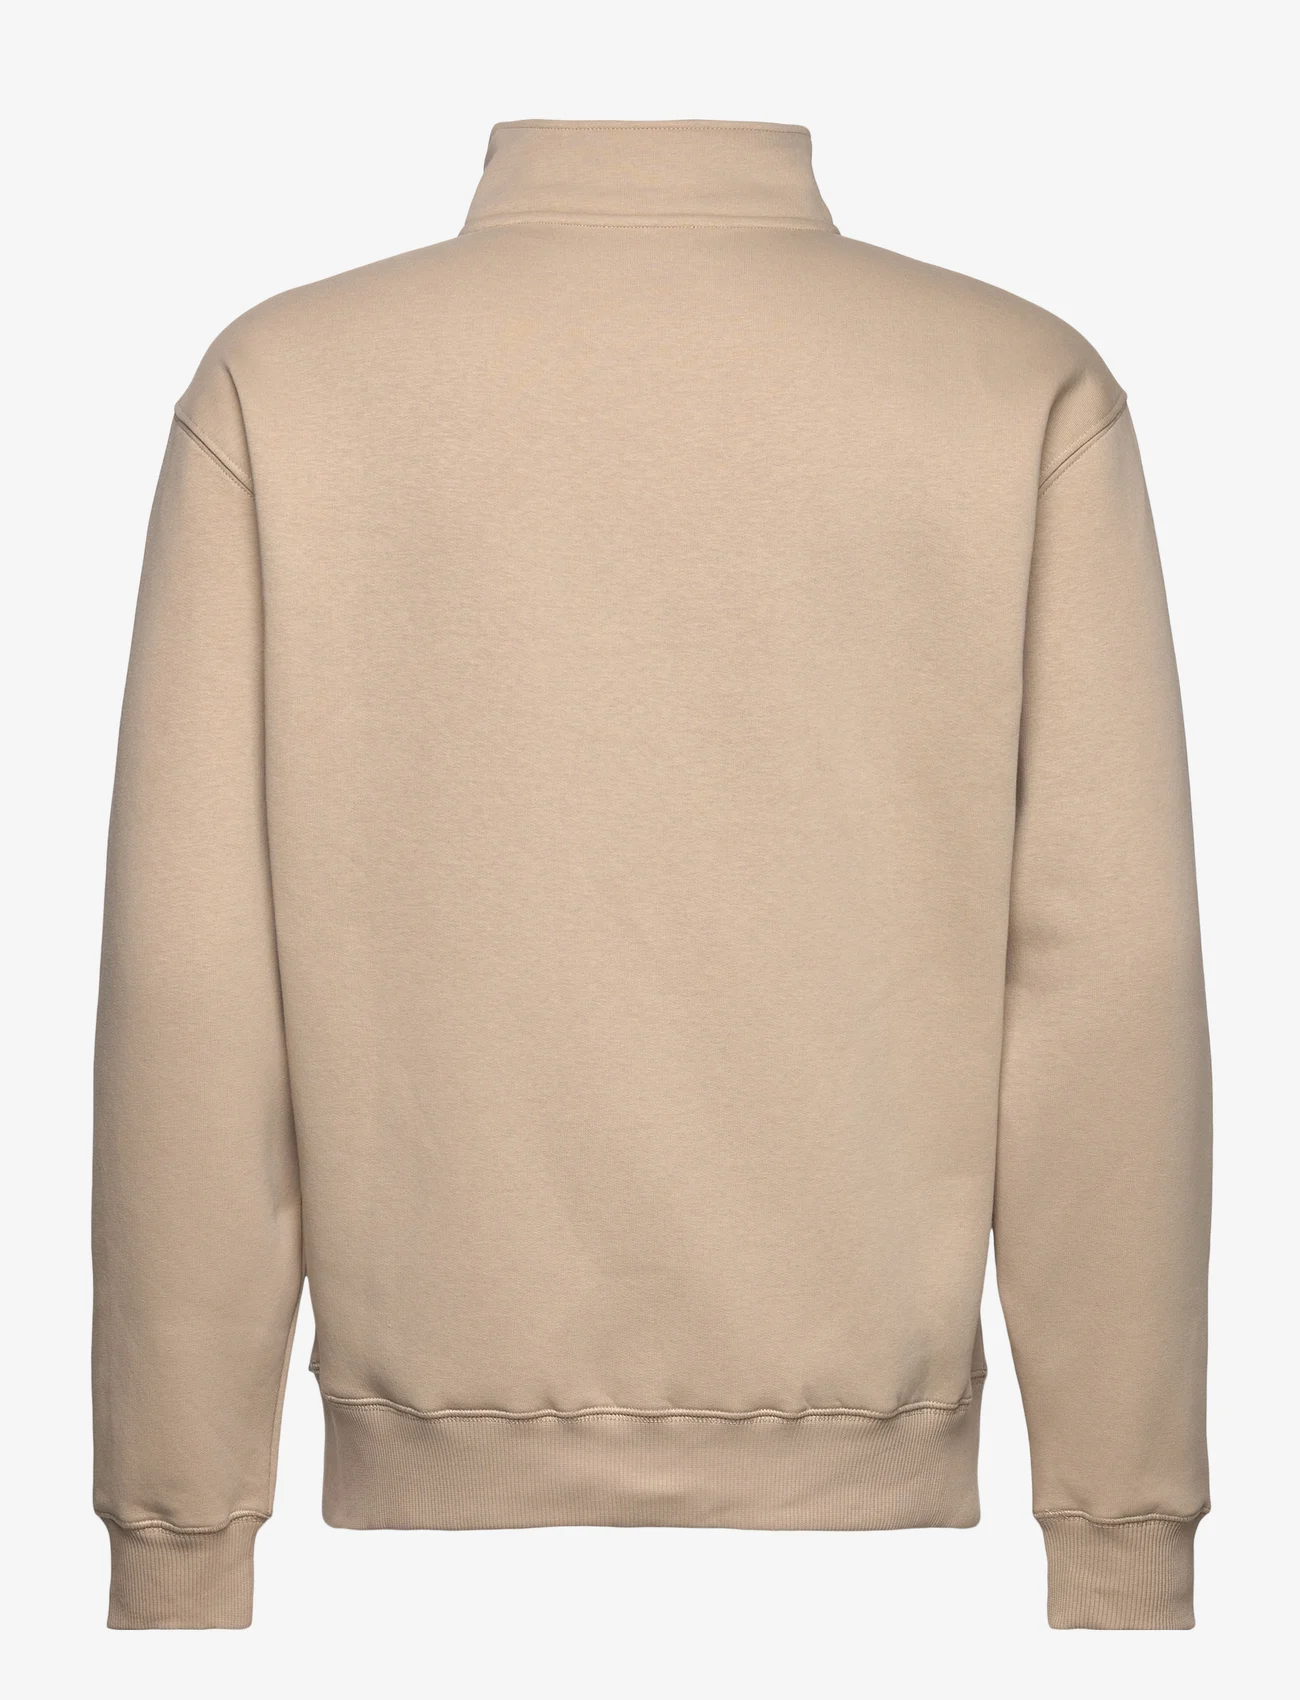 Soulland - Ken Half Zip Sweatshirt - truien en hoodies - beige - 1